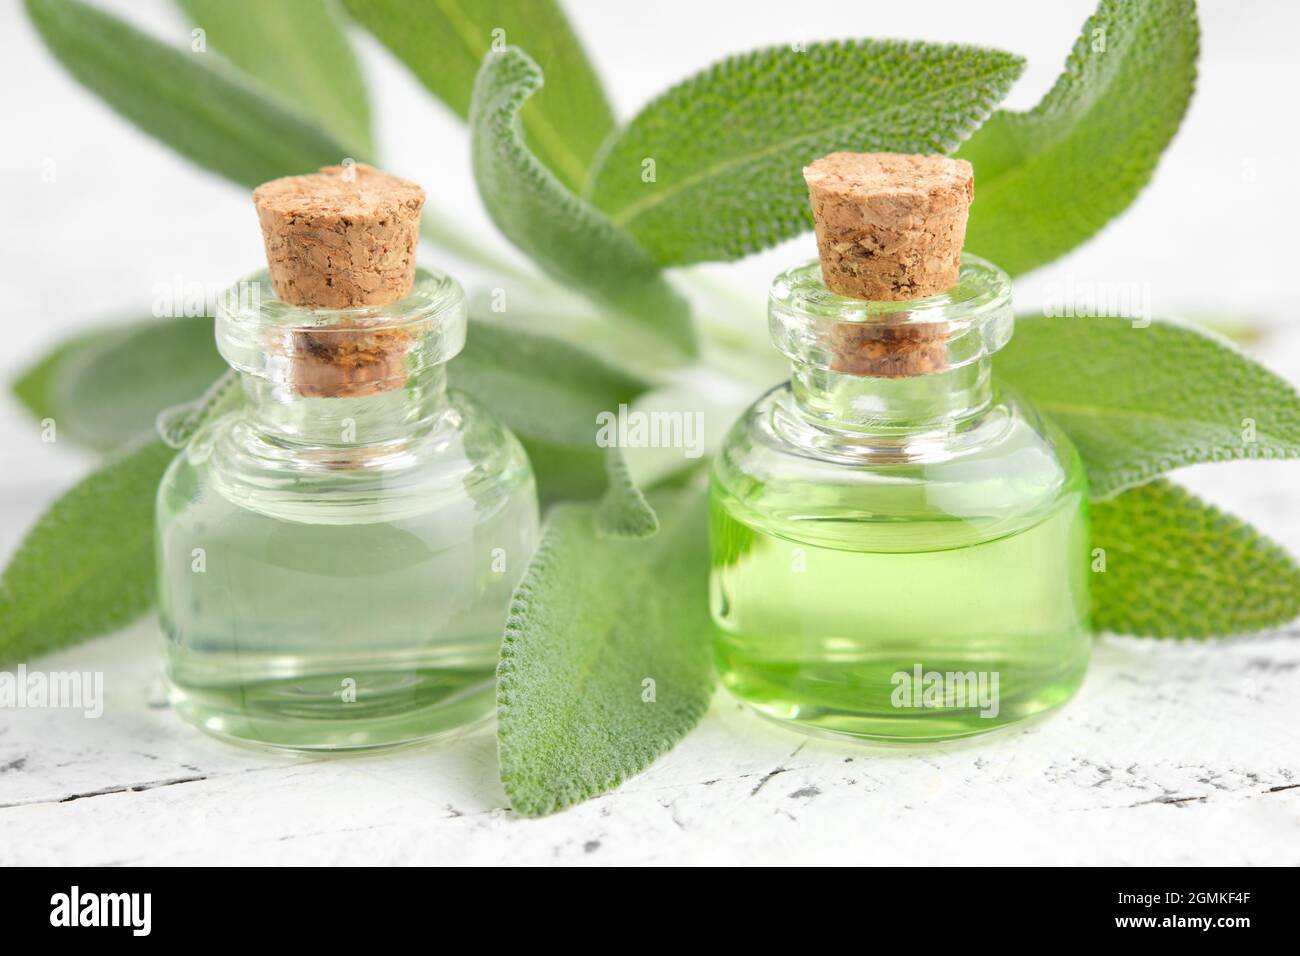 Flaschen mit ätherischem Salbei-Öl, frischen grünen Blättern von Salbei oder Salvia officinalis Heilpflanzen. Aromatherapie. Alternative und pflanzliche Medizin. Stockfoto